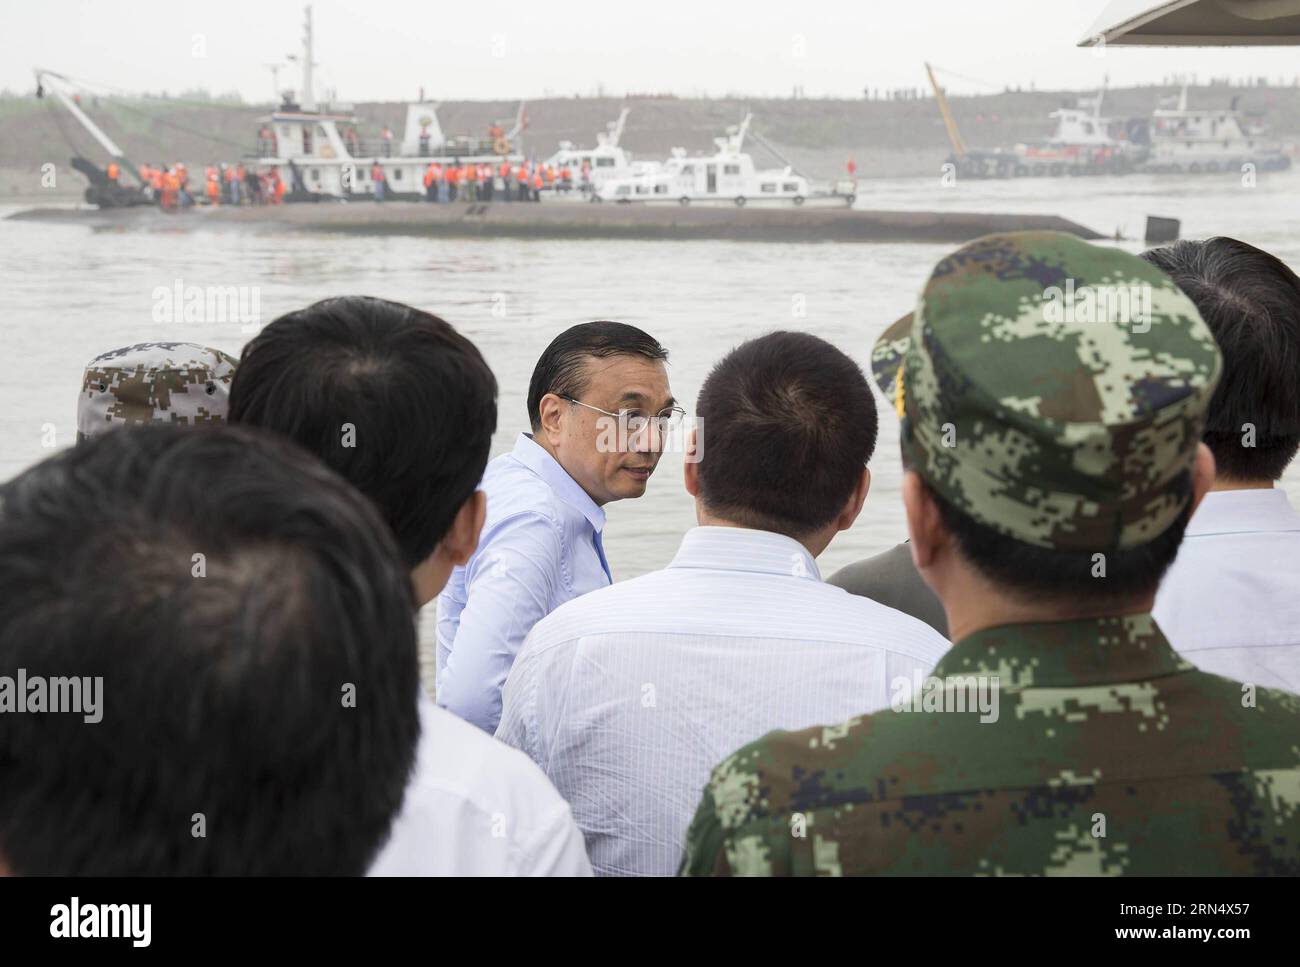 (150602) -- JIANLI, 2. Juni 2015 -- der chinesische Premier Li Keqiang (C) gibt Anweisungen zur Such- und Rettungsarbeit auf einem Schiff an der Stelle eines umgestürzten Schiffes im Abschnitt Jianli des Yangtze-Flusses in der zentralchinesischen Provinz Hubei, 2. Juni 2015. Eine 65-jährige Frau wurde von einem Frogman gerettet. Das Schiff, Dongfangzhixing oder Eastern Star genannt, sank am Montag um 1328 Uhr (GMT) im Jianli-Abschnitt des Jangtze-Flusses. Mit 405 Passagieren, fünf Reisebüromitarbeitern und 47 Besatzungsmitgliedern fuhr das Schiff von Nanjing, der Hauptstadt der ostchinesischen Provinz Jiangsu, in Richtung Südwest-CH Stockfoto